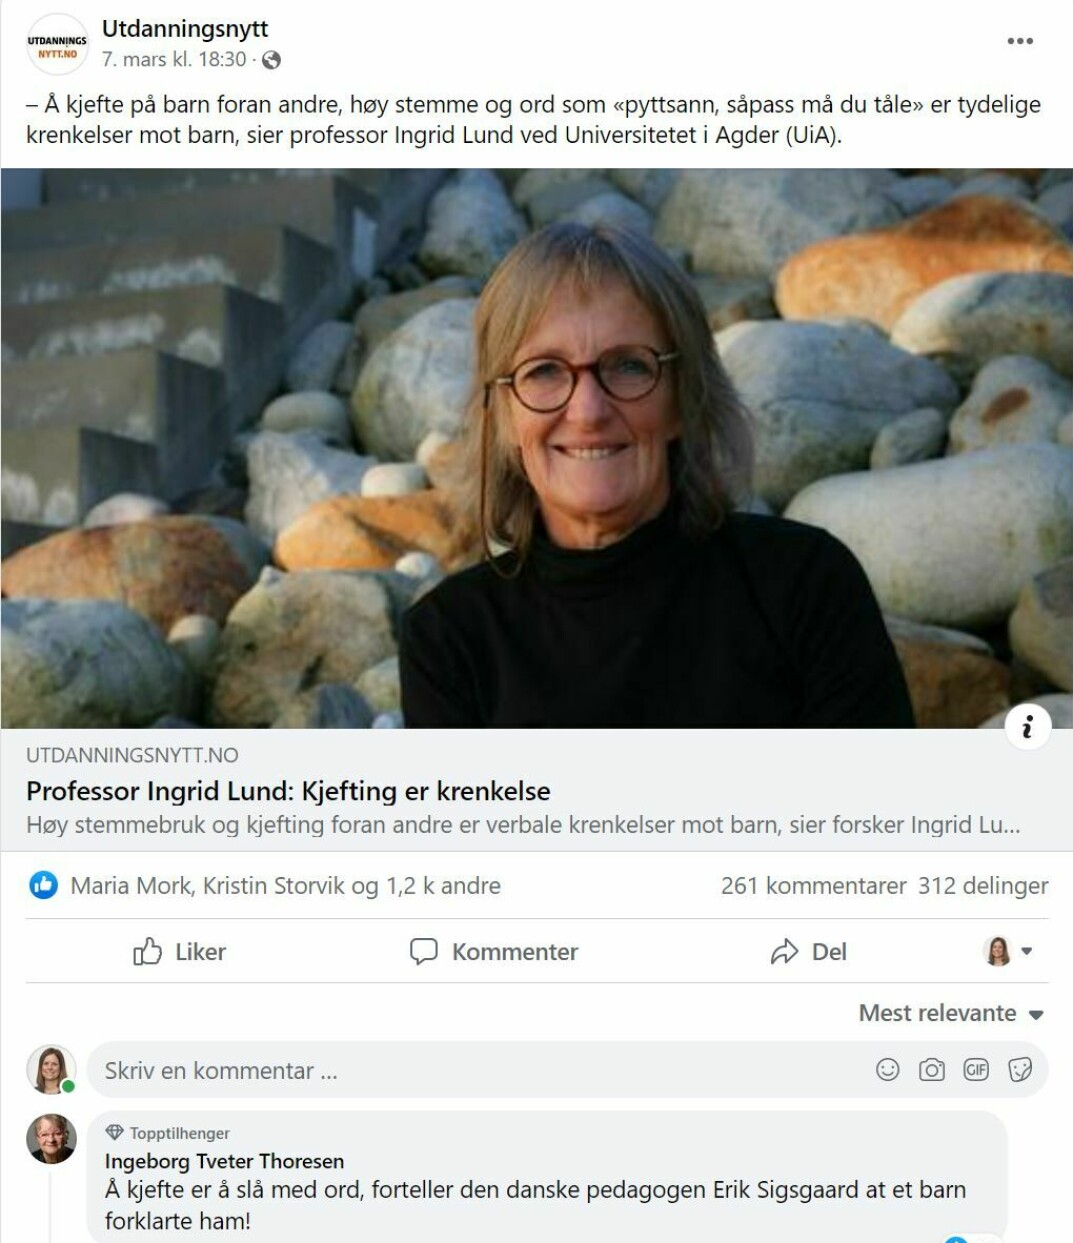 Professor Ingrid Lund skapte debatt med sine uttalelser om at det å kjefte på barn foran andre og med høy stemme er krenkelser mot barn. Mange var enige med henne og noen var uenig.